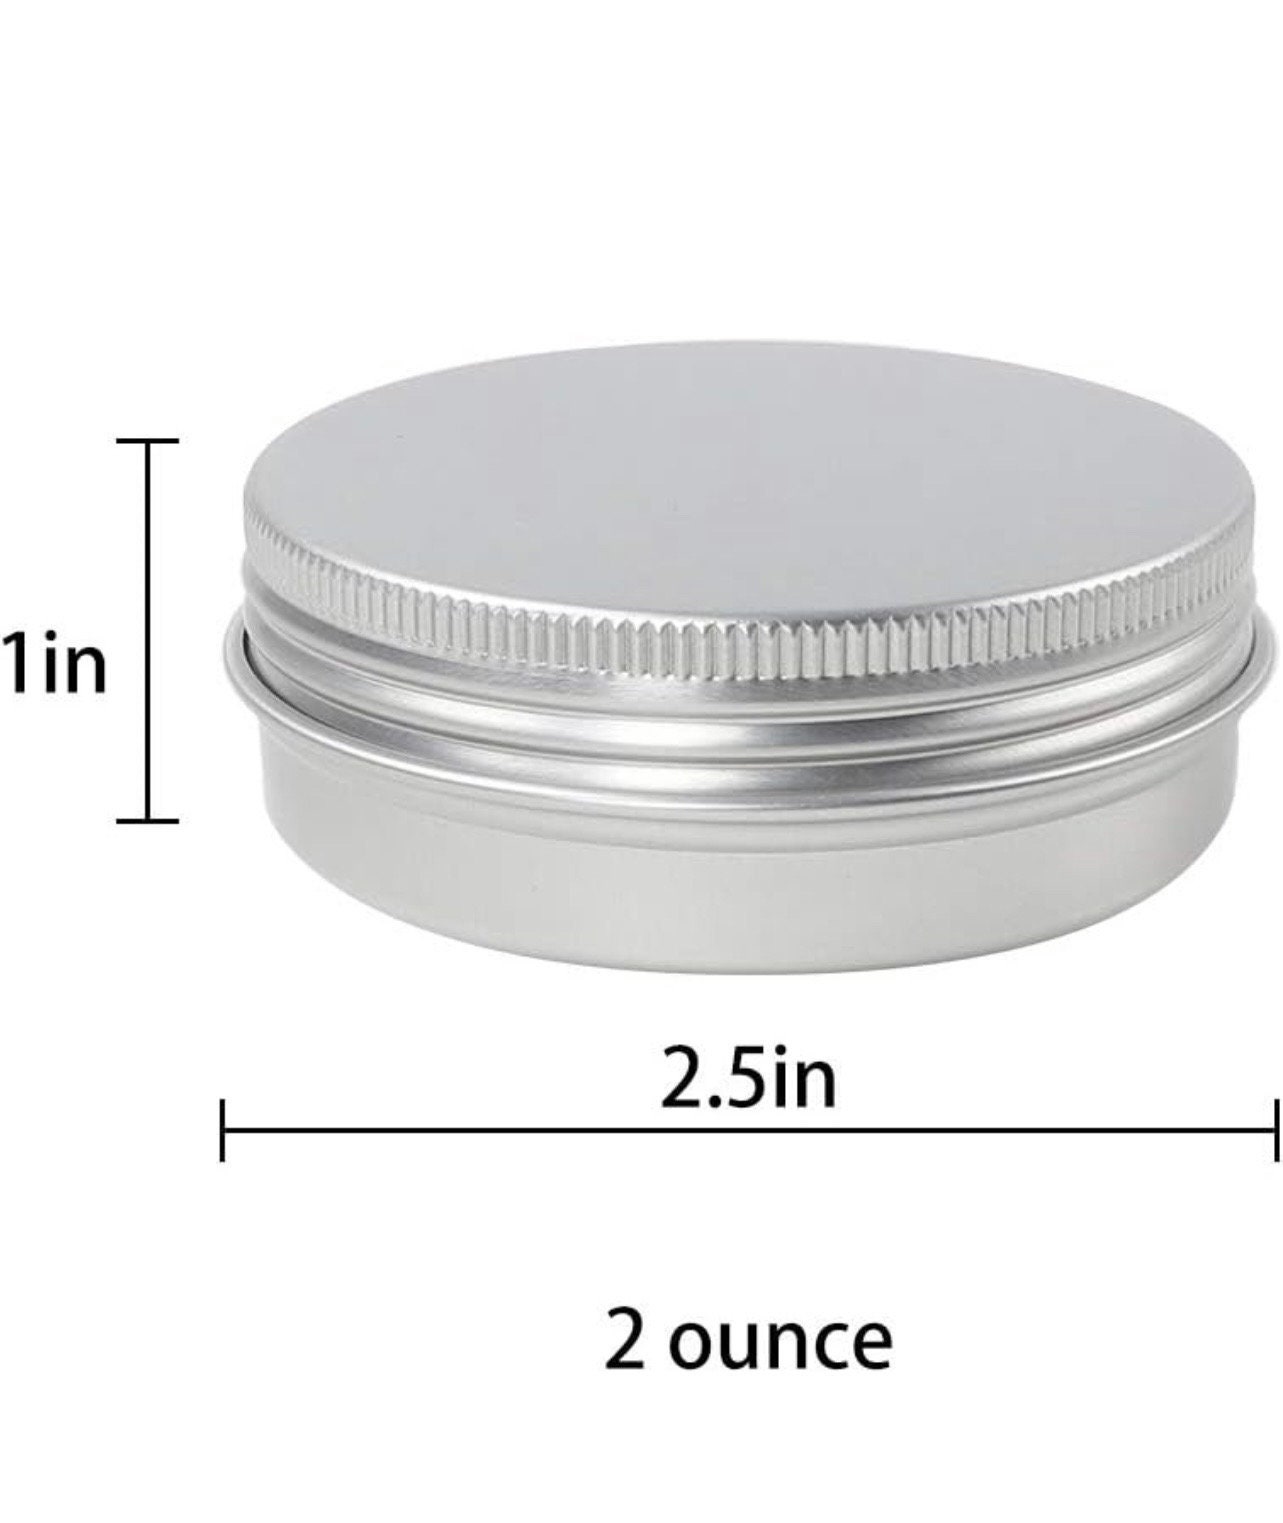 1/4 Oz 1.5 Inch Round Tins DIY Lip Balm Solid Perfume Wedding